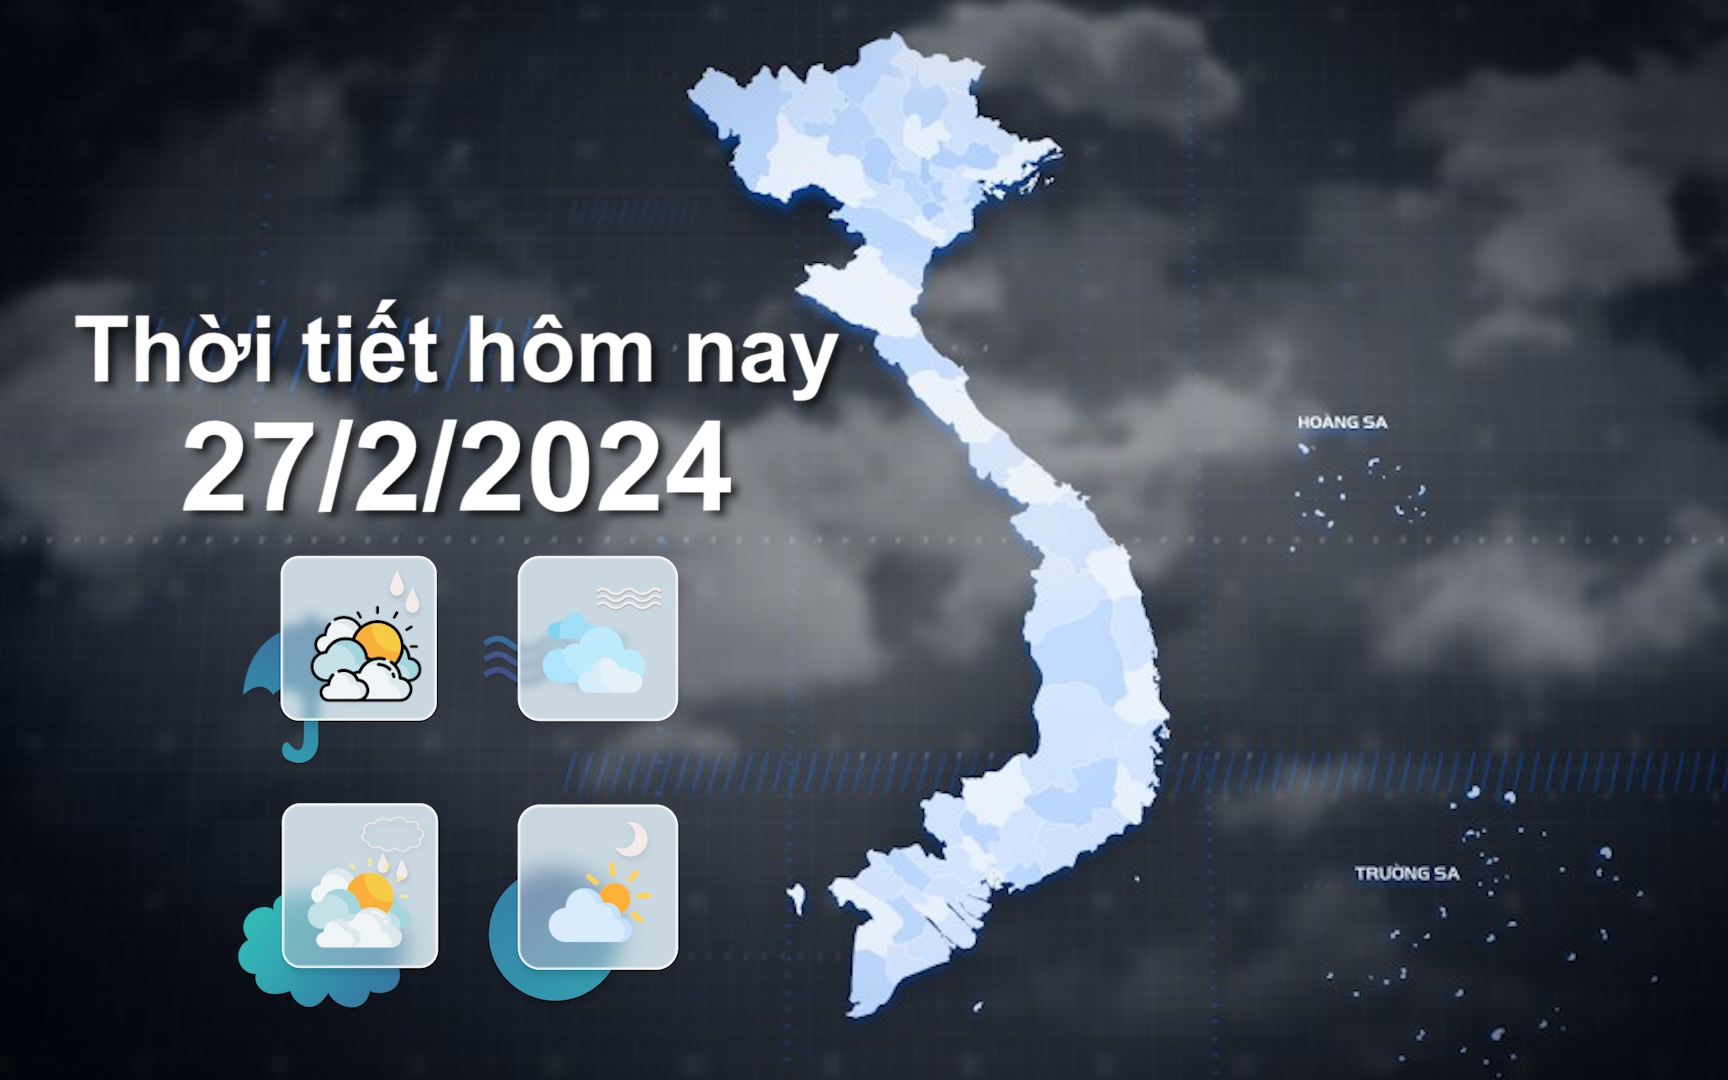 Thời tiết hôm nay 27/2/2024: Bắc Bộ trời rét và mưa nhỏ, Trung Bộ có mưa rào